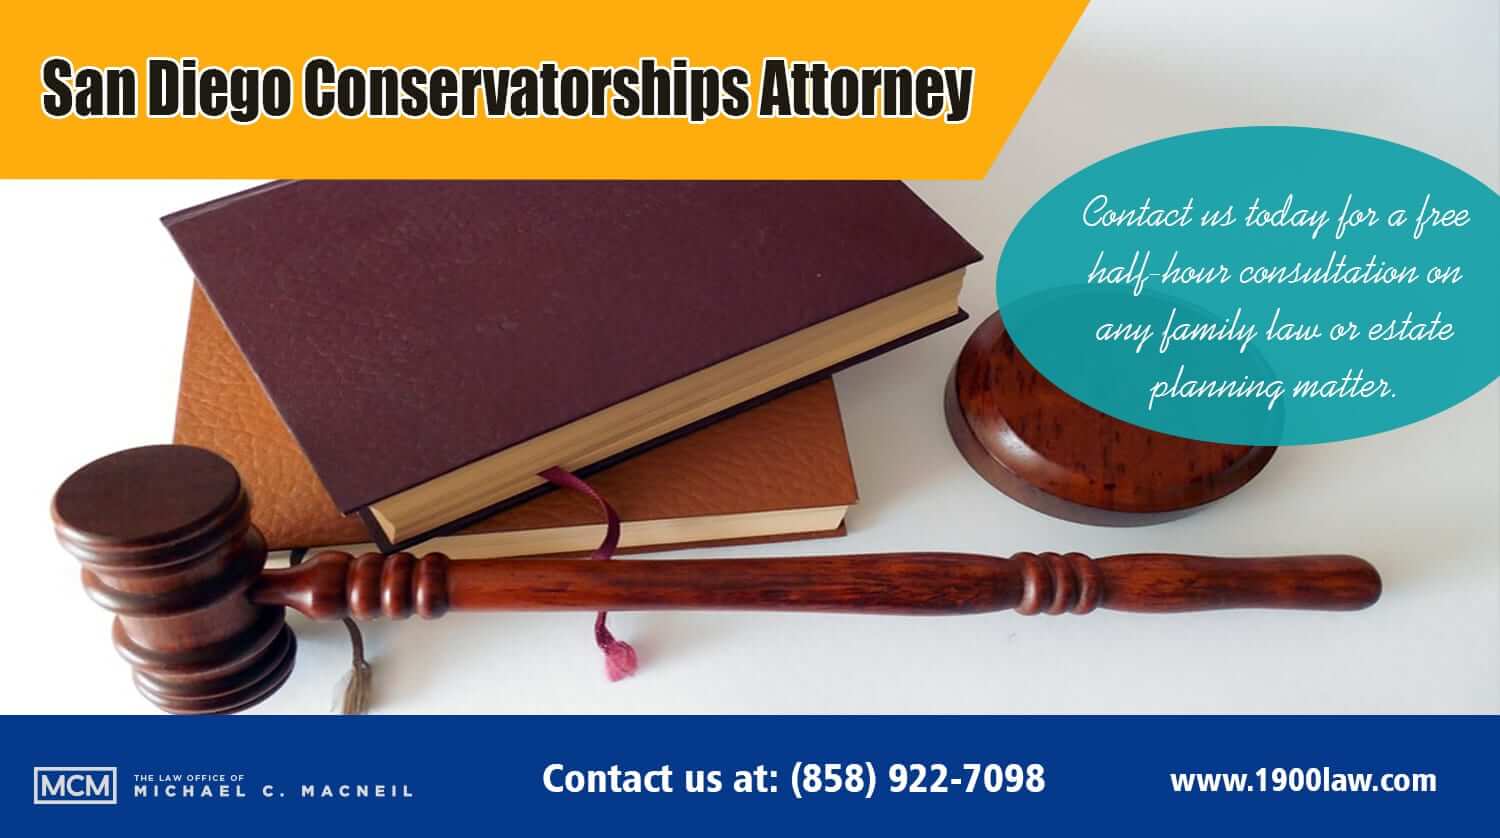 San Diego Conservatorships Attorney